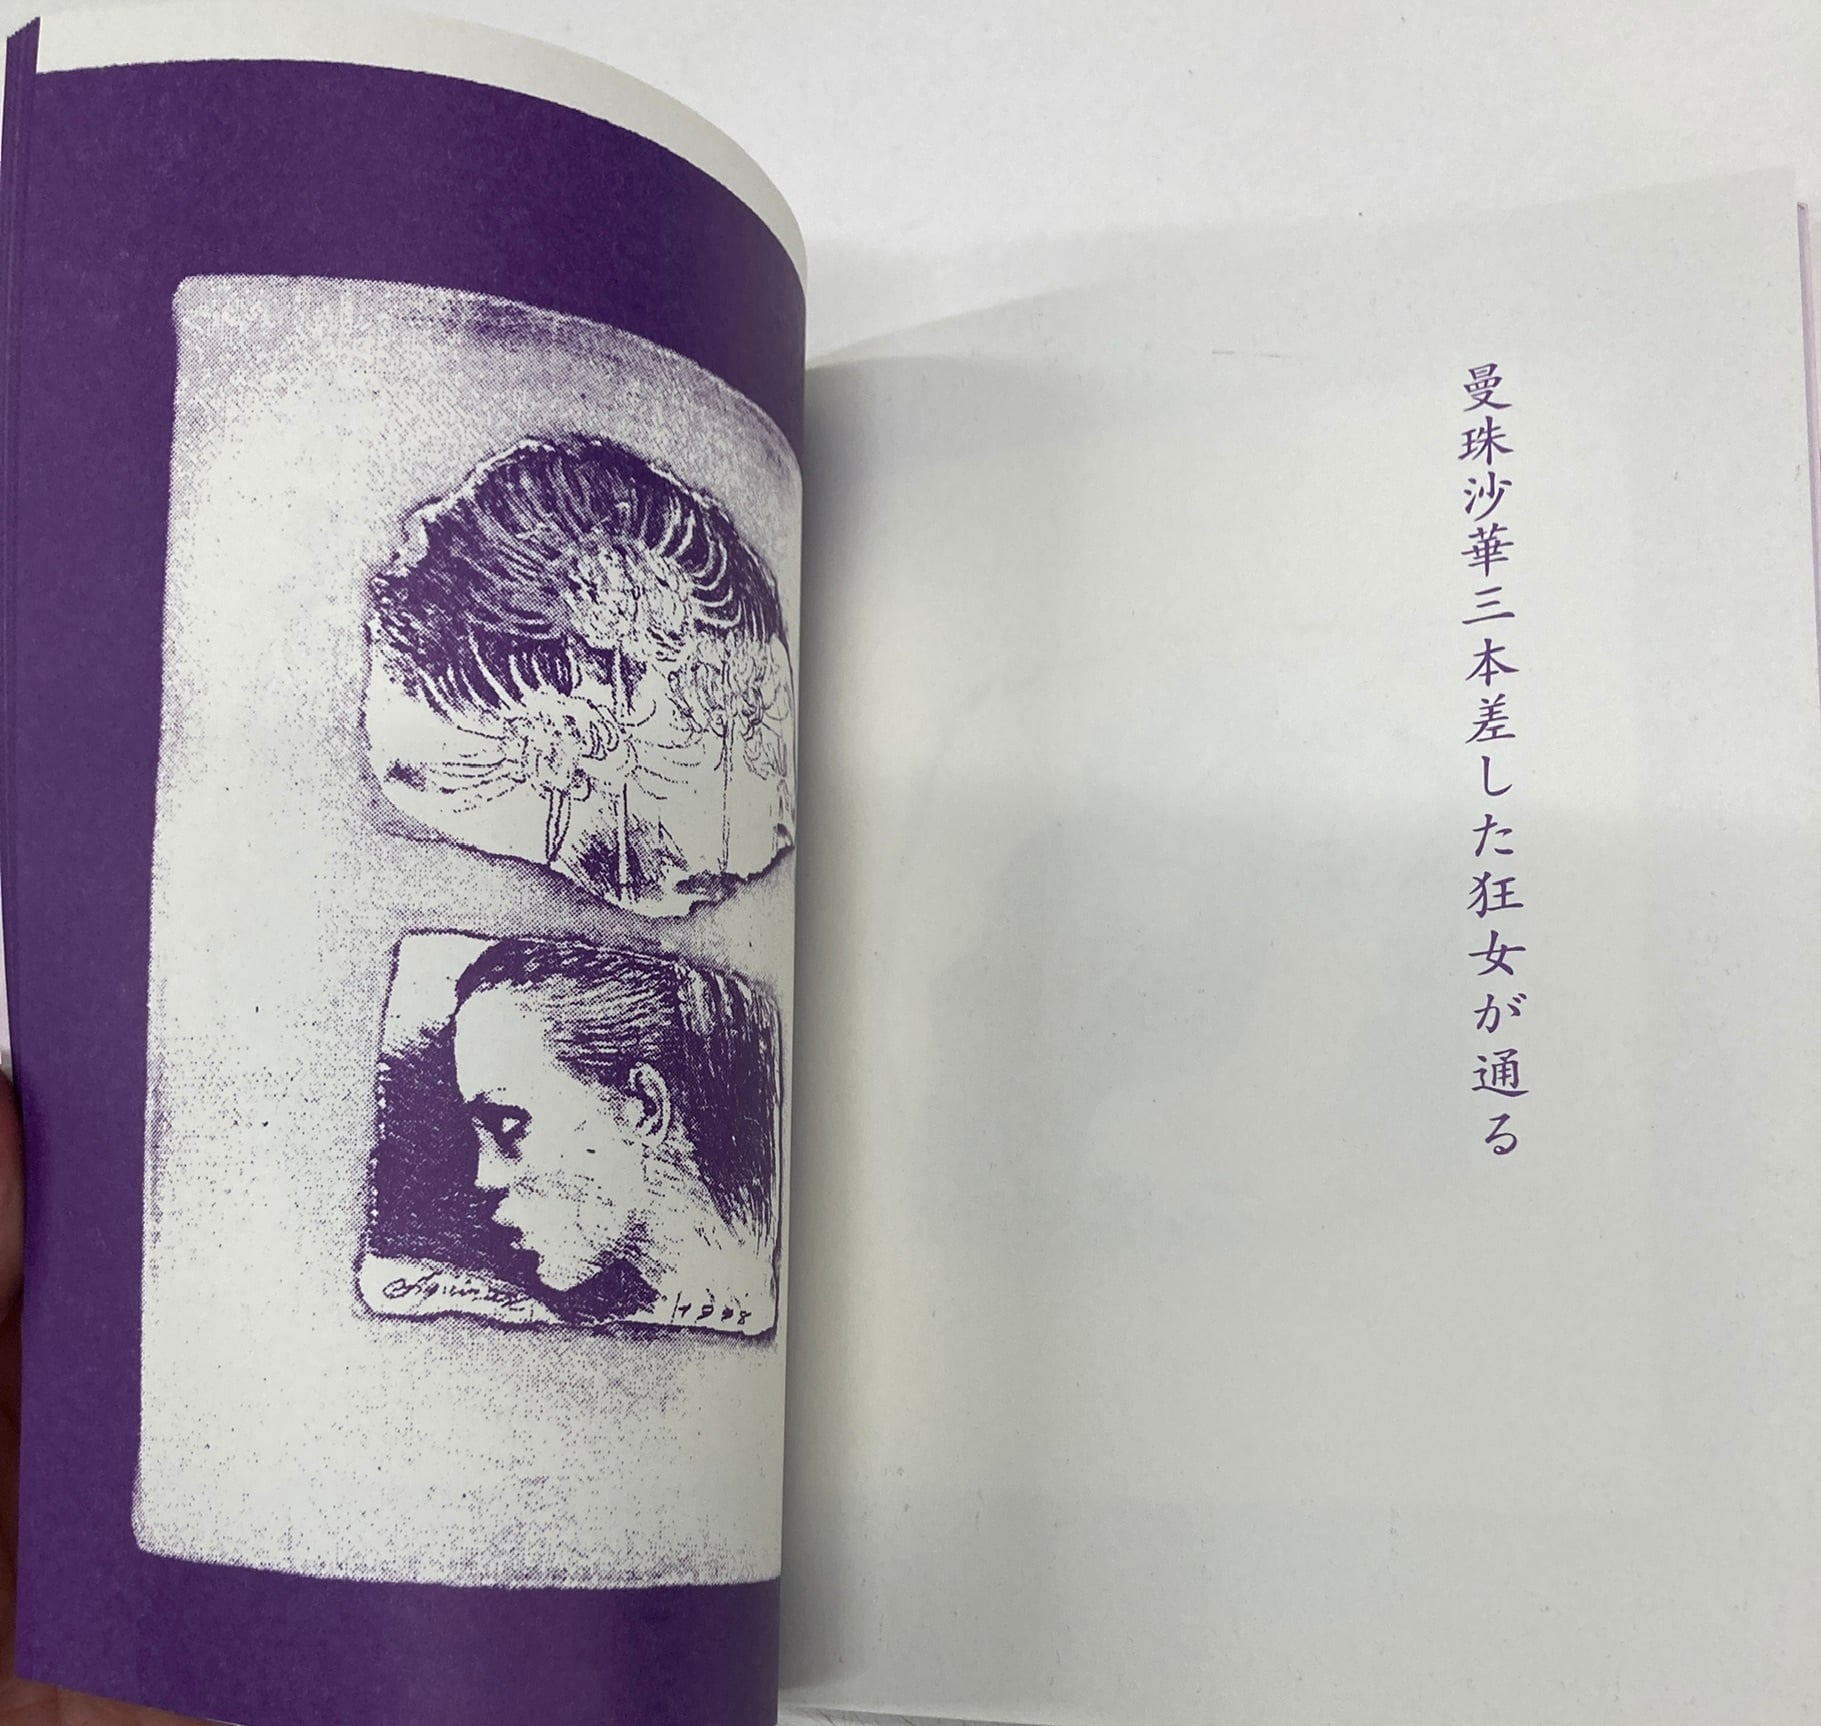 『marimekko「マリメッコ」展』300部限定展示会図録